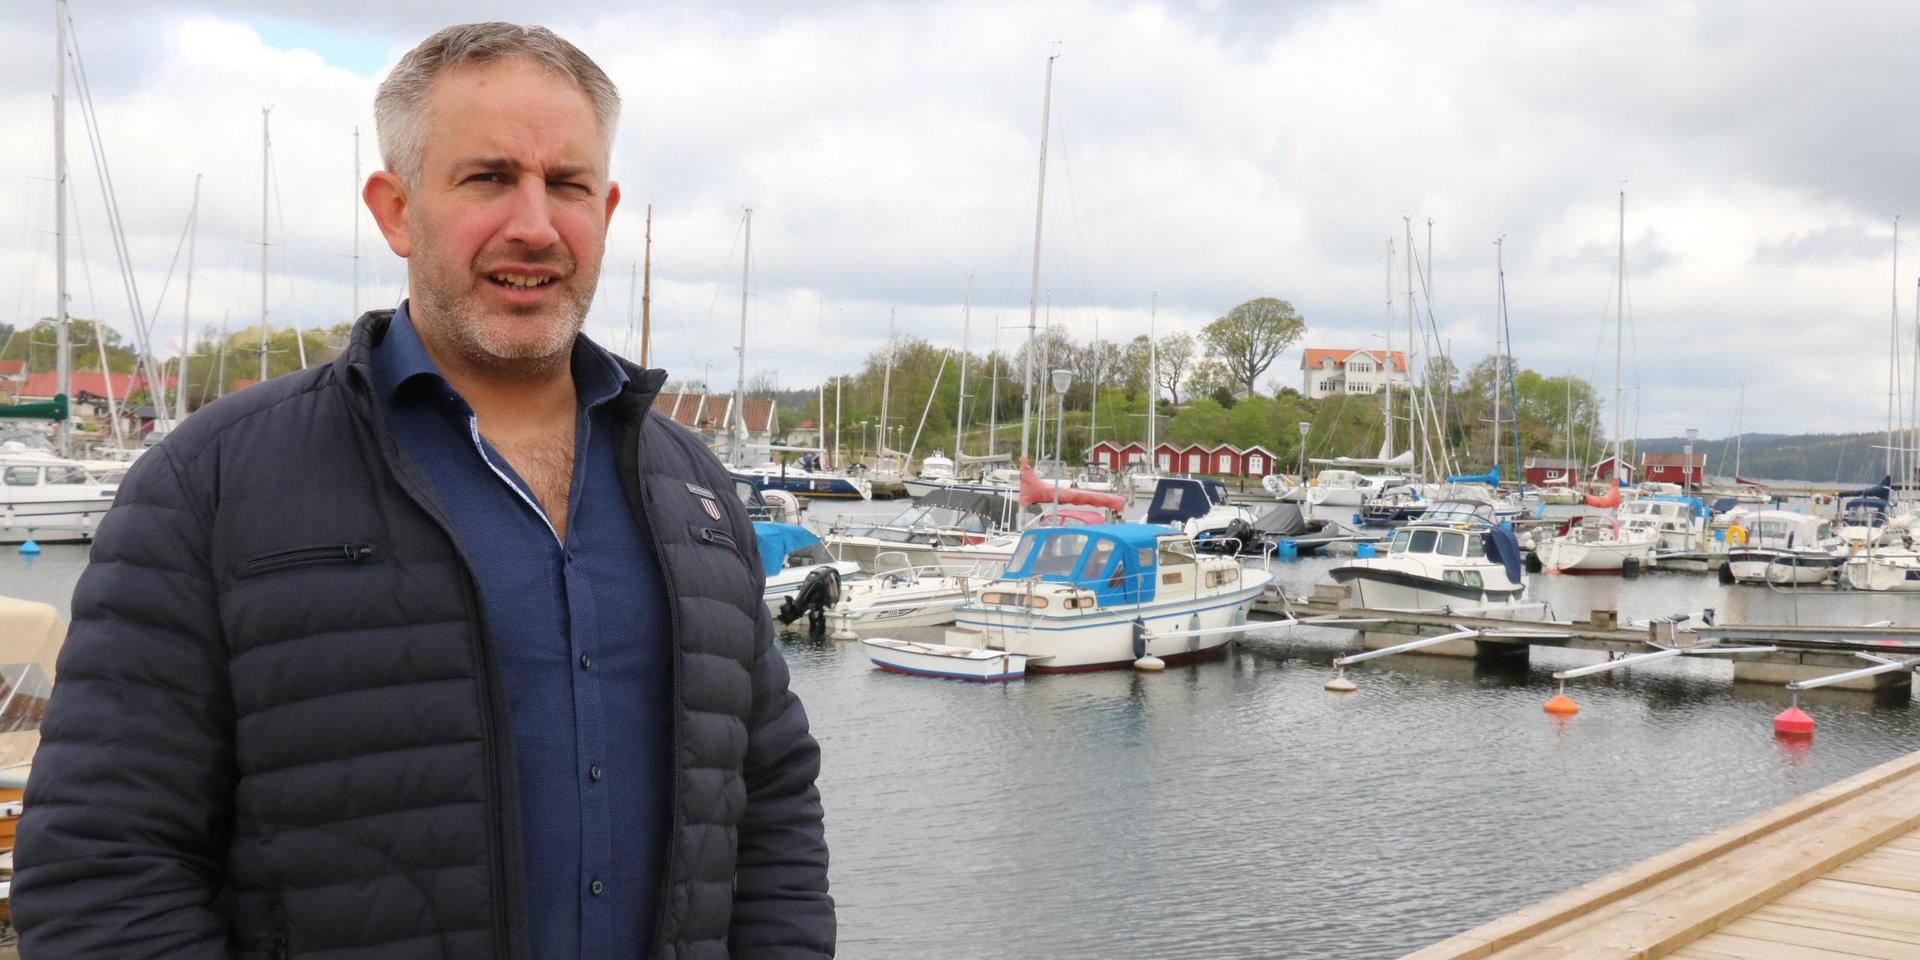 Andreas Sjögren är enhetschef för hamnar och parkeringar i Orust kommun. Han har försökt få hjälp av polis och Kronofogden att få bort de båtar i hamnen där det olovligen bor människor och även de båtar som övergivits. 